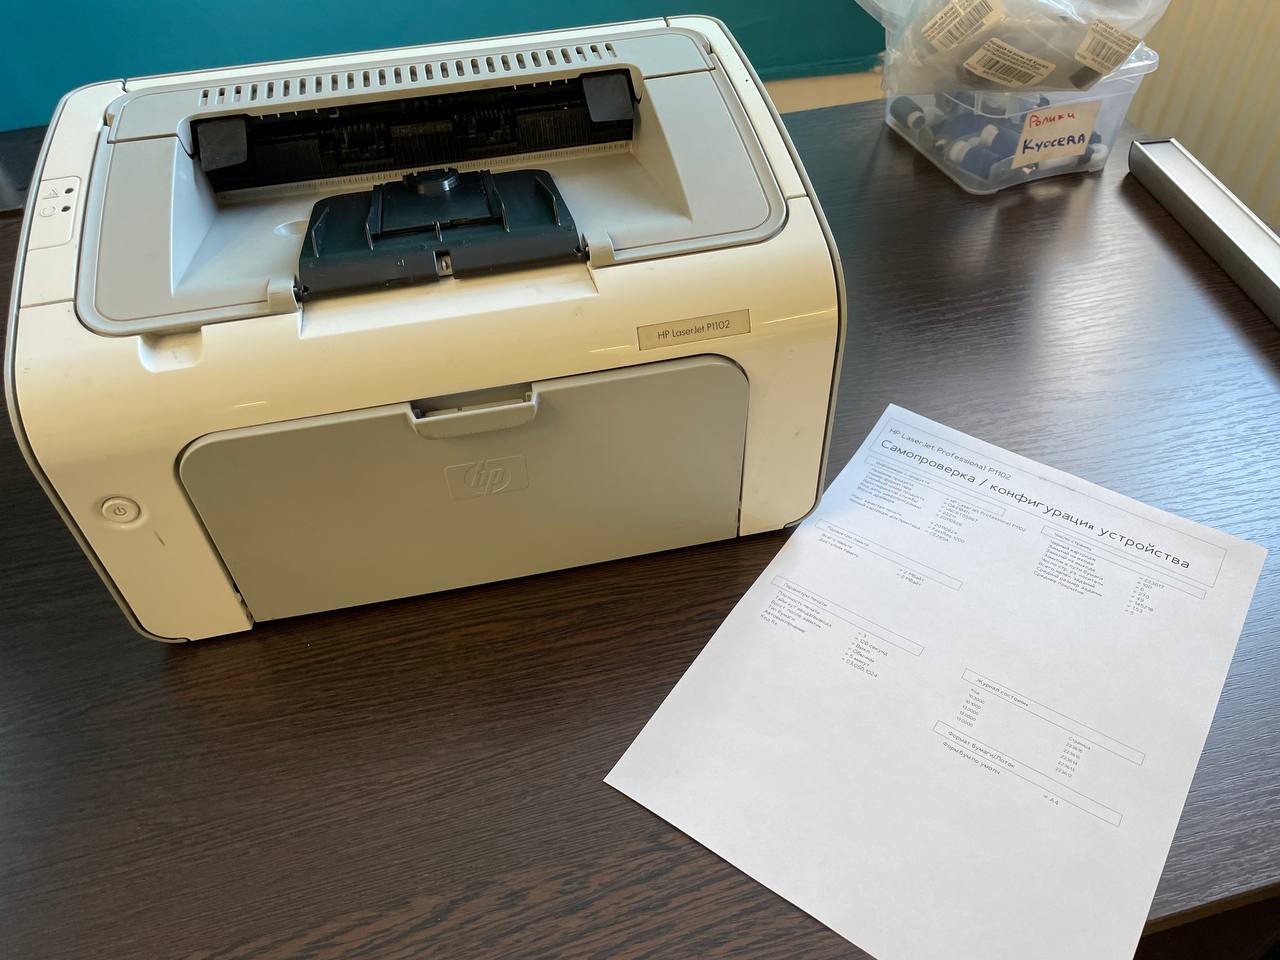 Ремонт принтера HP LaserJet Pro P1102, замятие бумаги